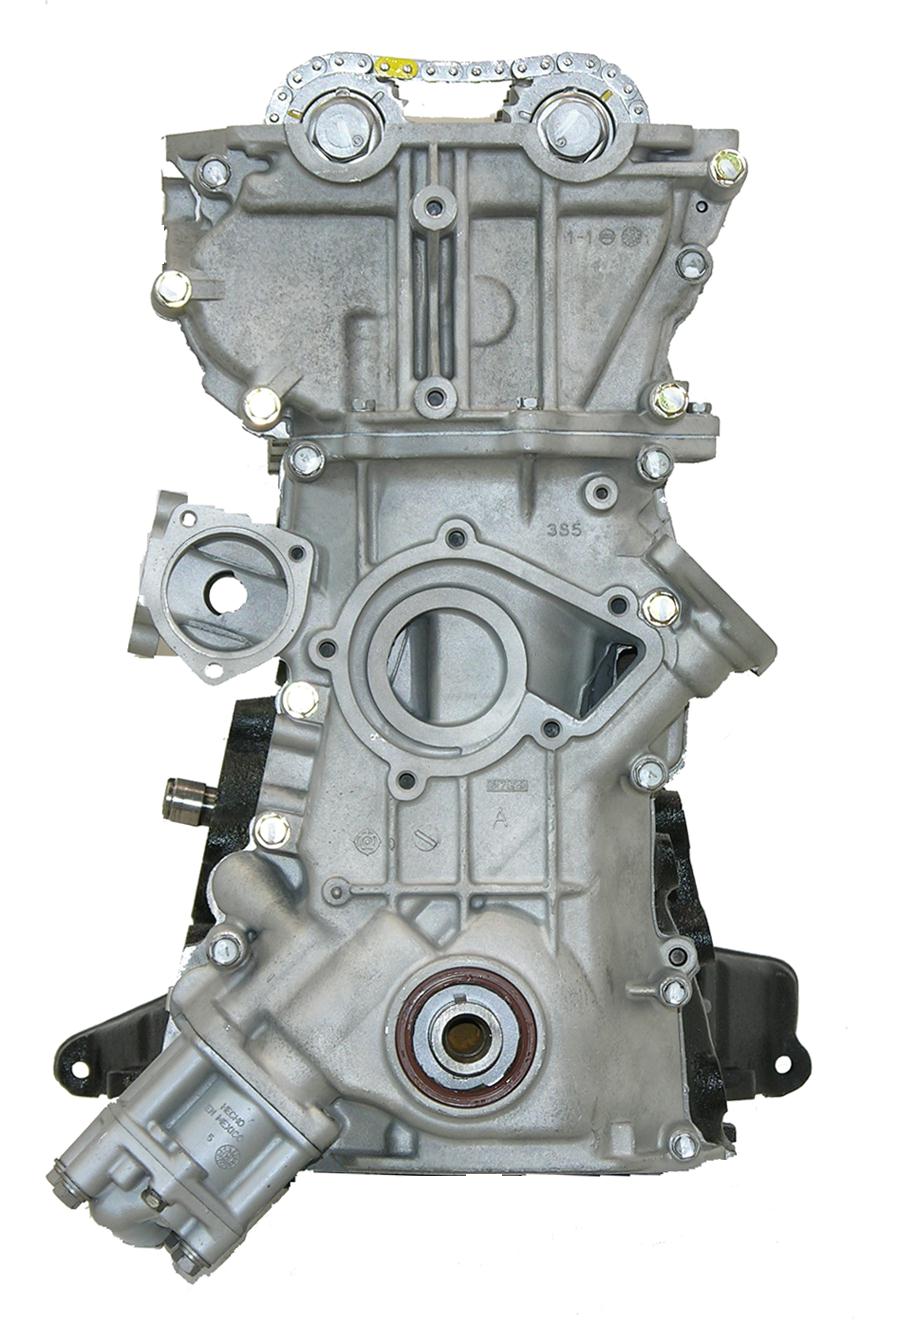 Nissan KA24DE 2.4L L4 Remanufactured Engine - 9/97-12/04